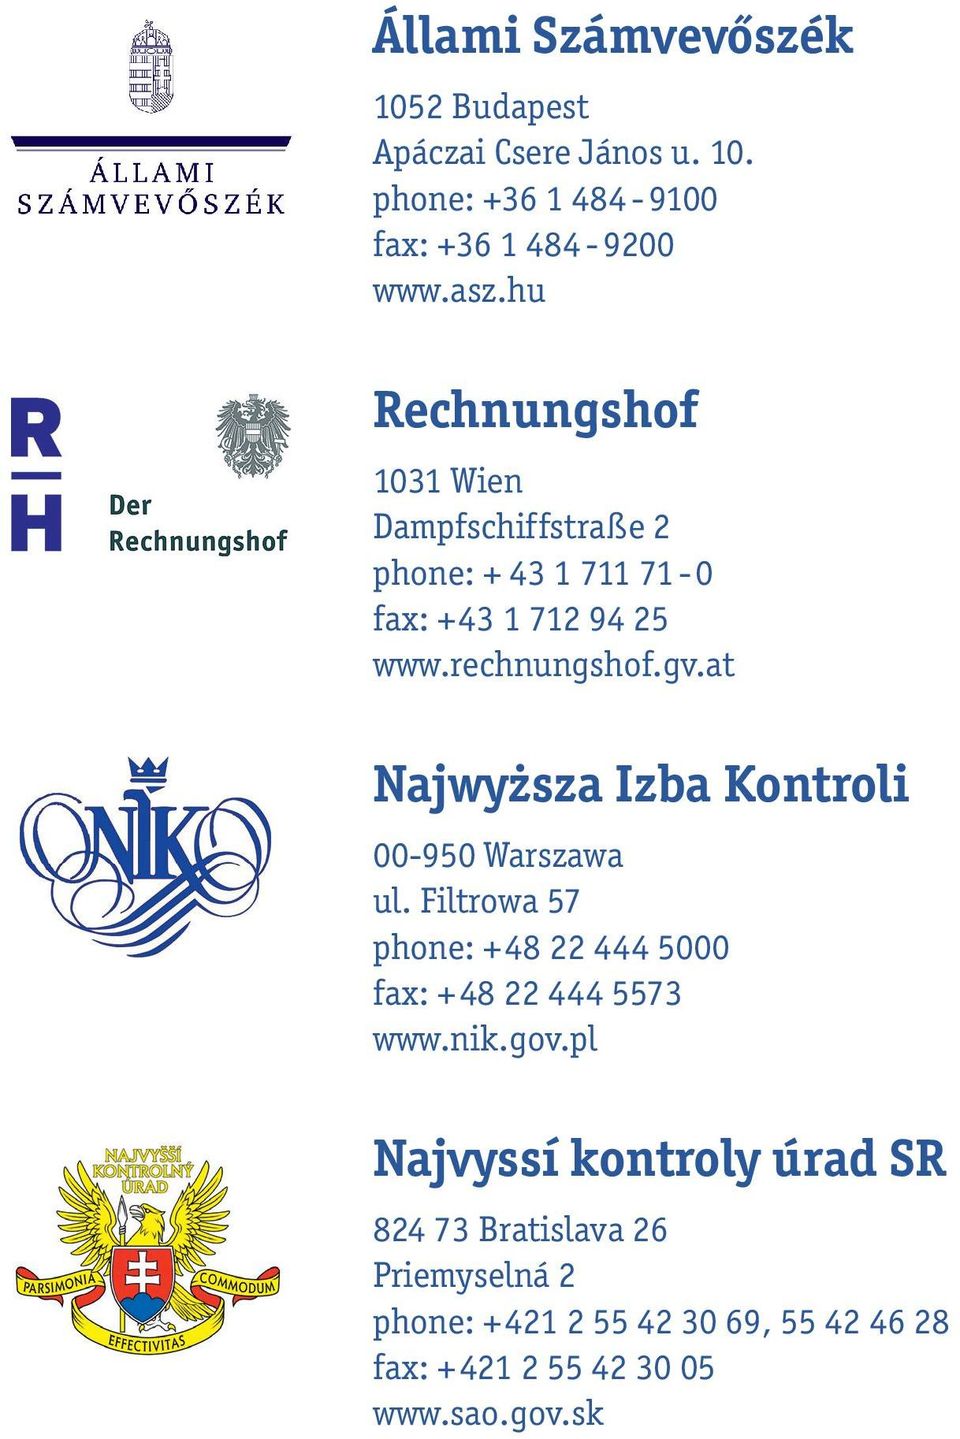 at Najwyższa Izba Kontroli 00-950 Warszawa ul. Filtrowa 57 hone: +48 22 444 5000 fax: +48 22 444 5573 www.nik.gov.